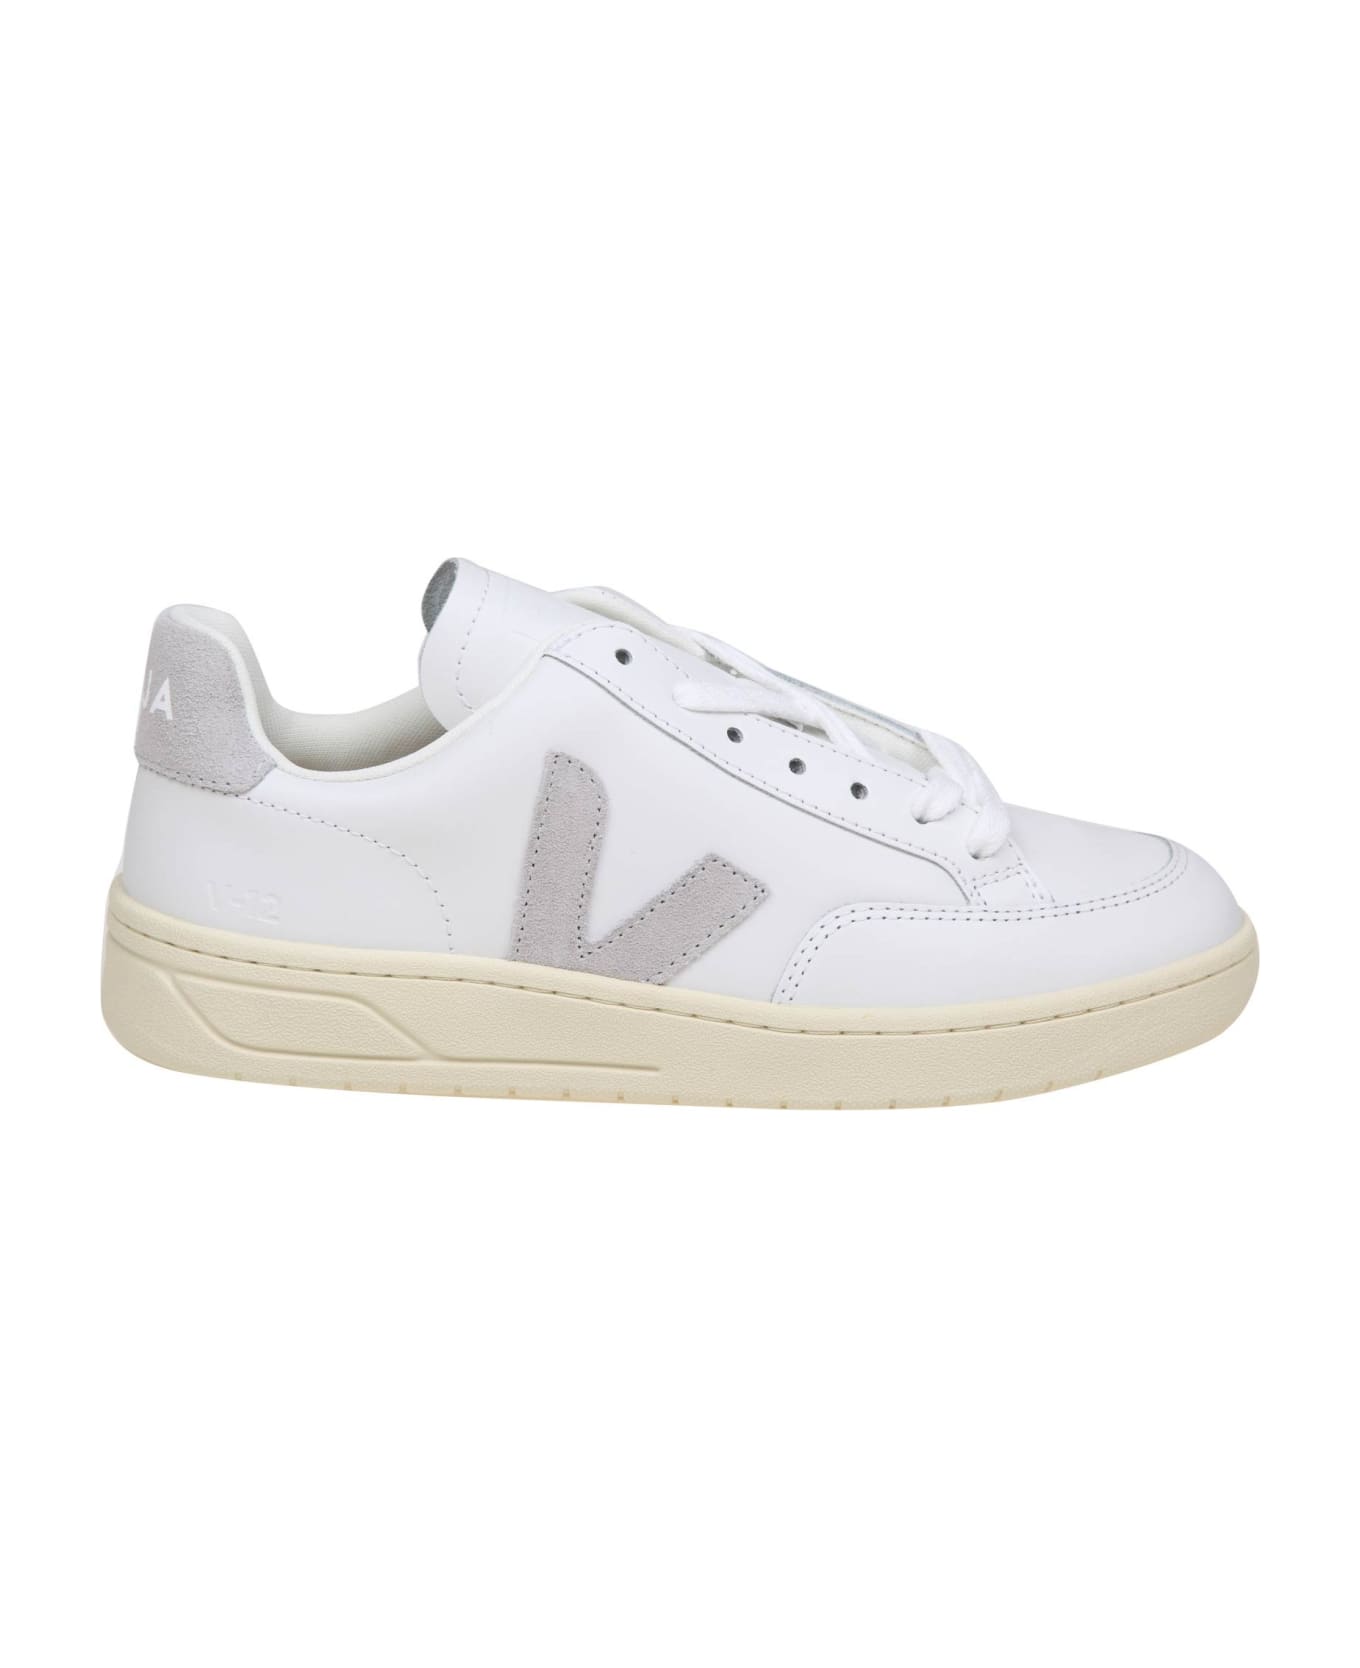 Veja V 12 Sneakers In White/grey Leather - white/light grey